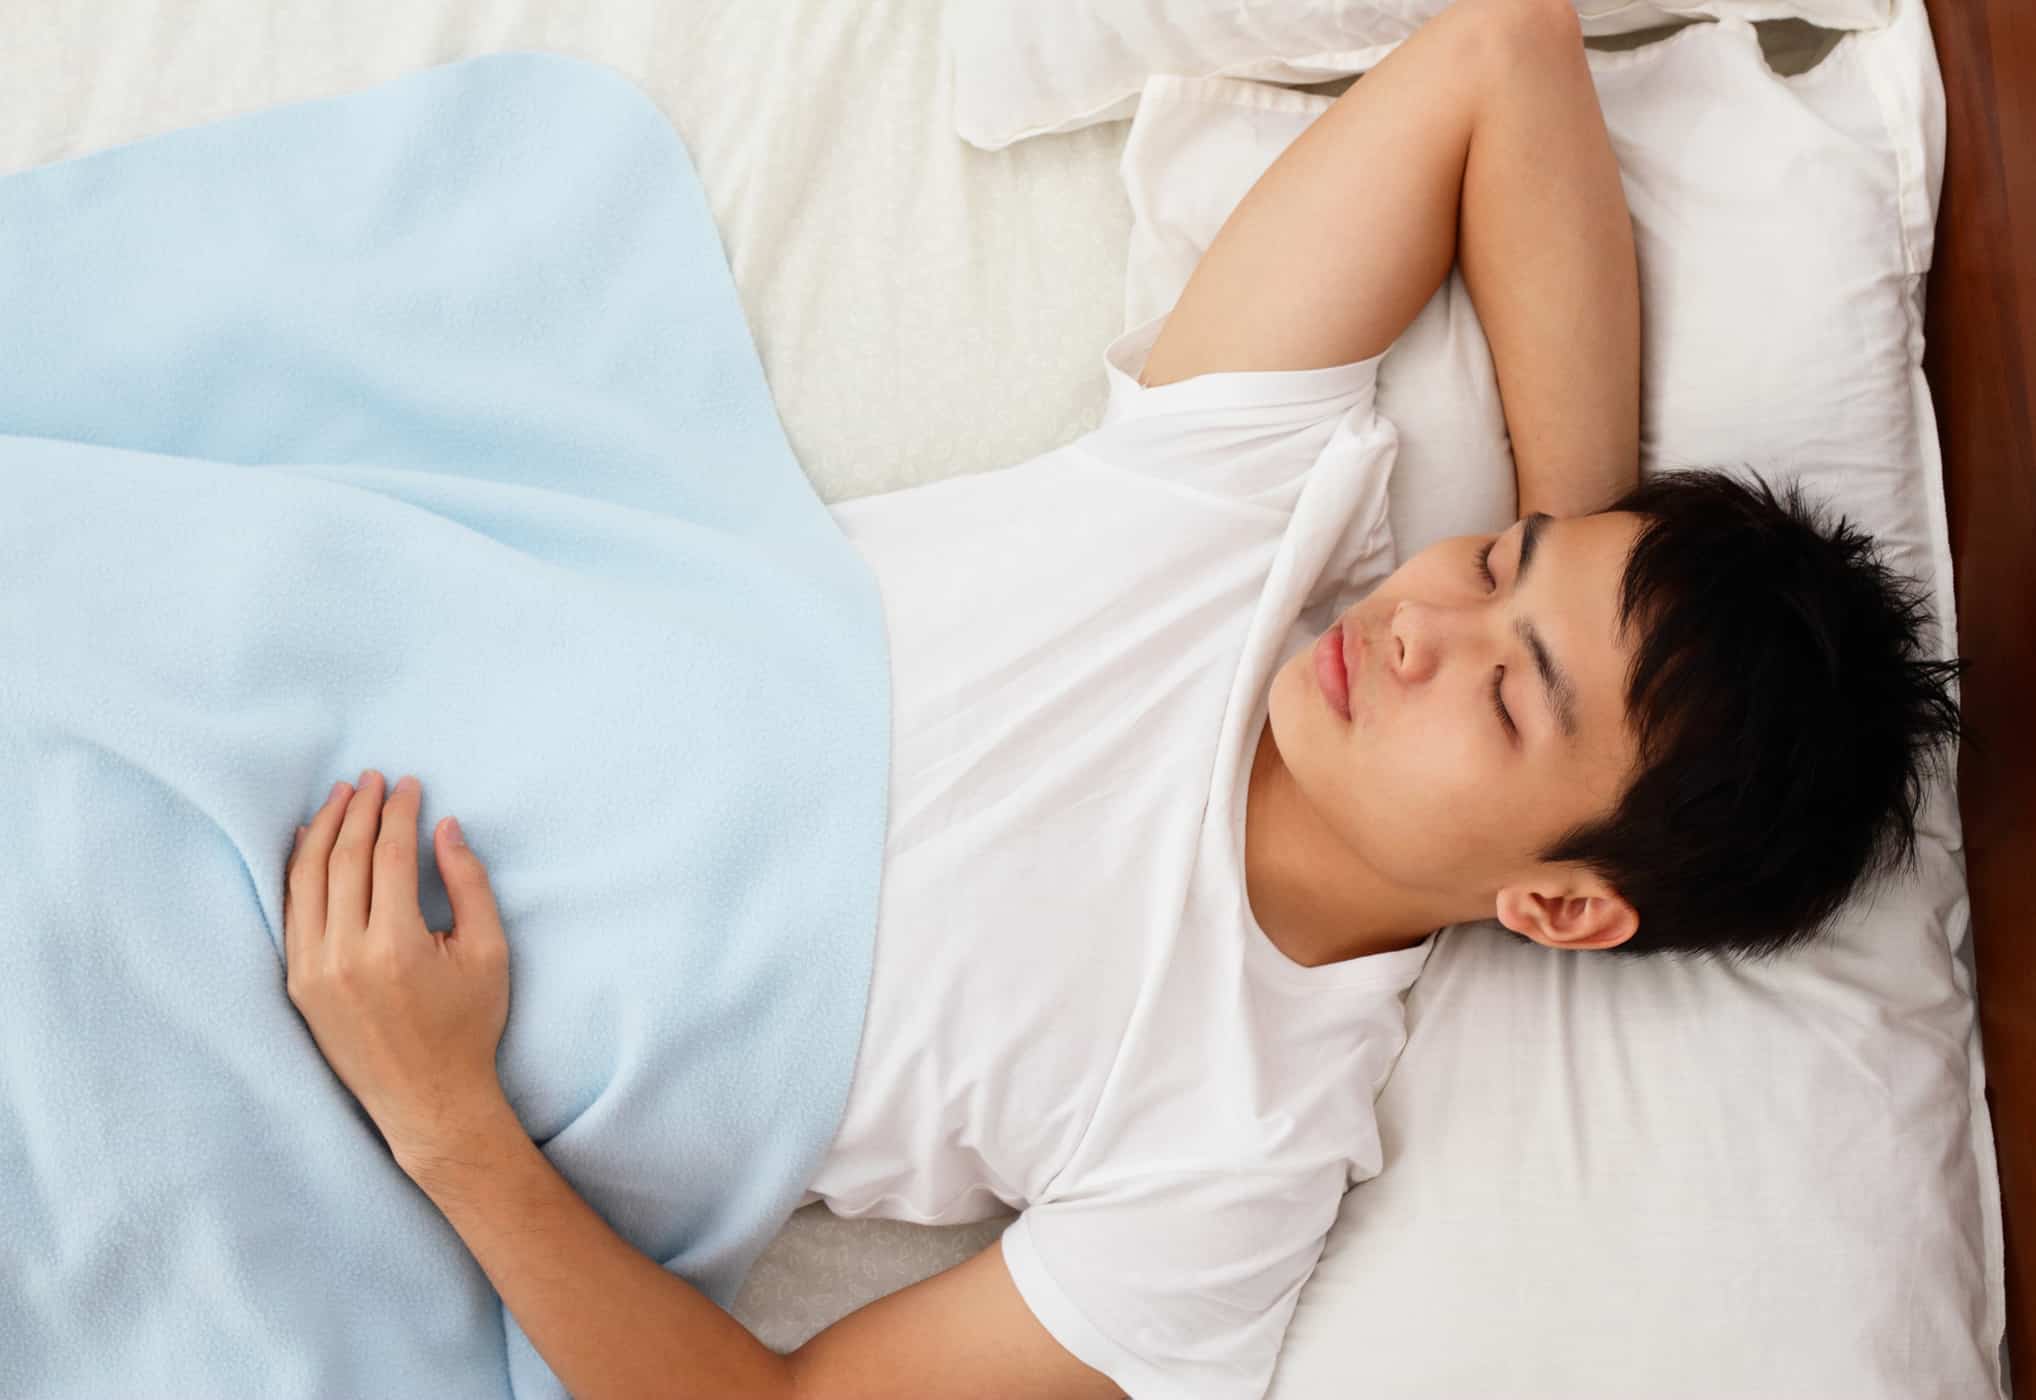 नींद की स्थिति पाचन को प्रभावित करती है